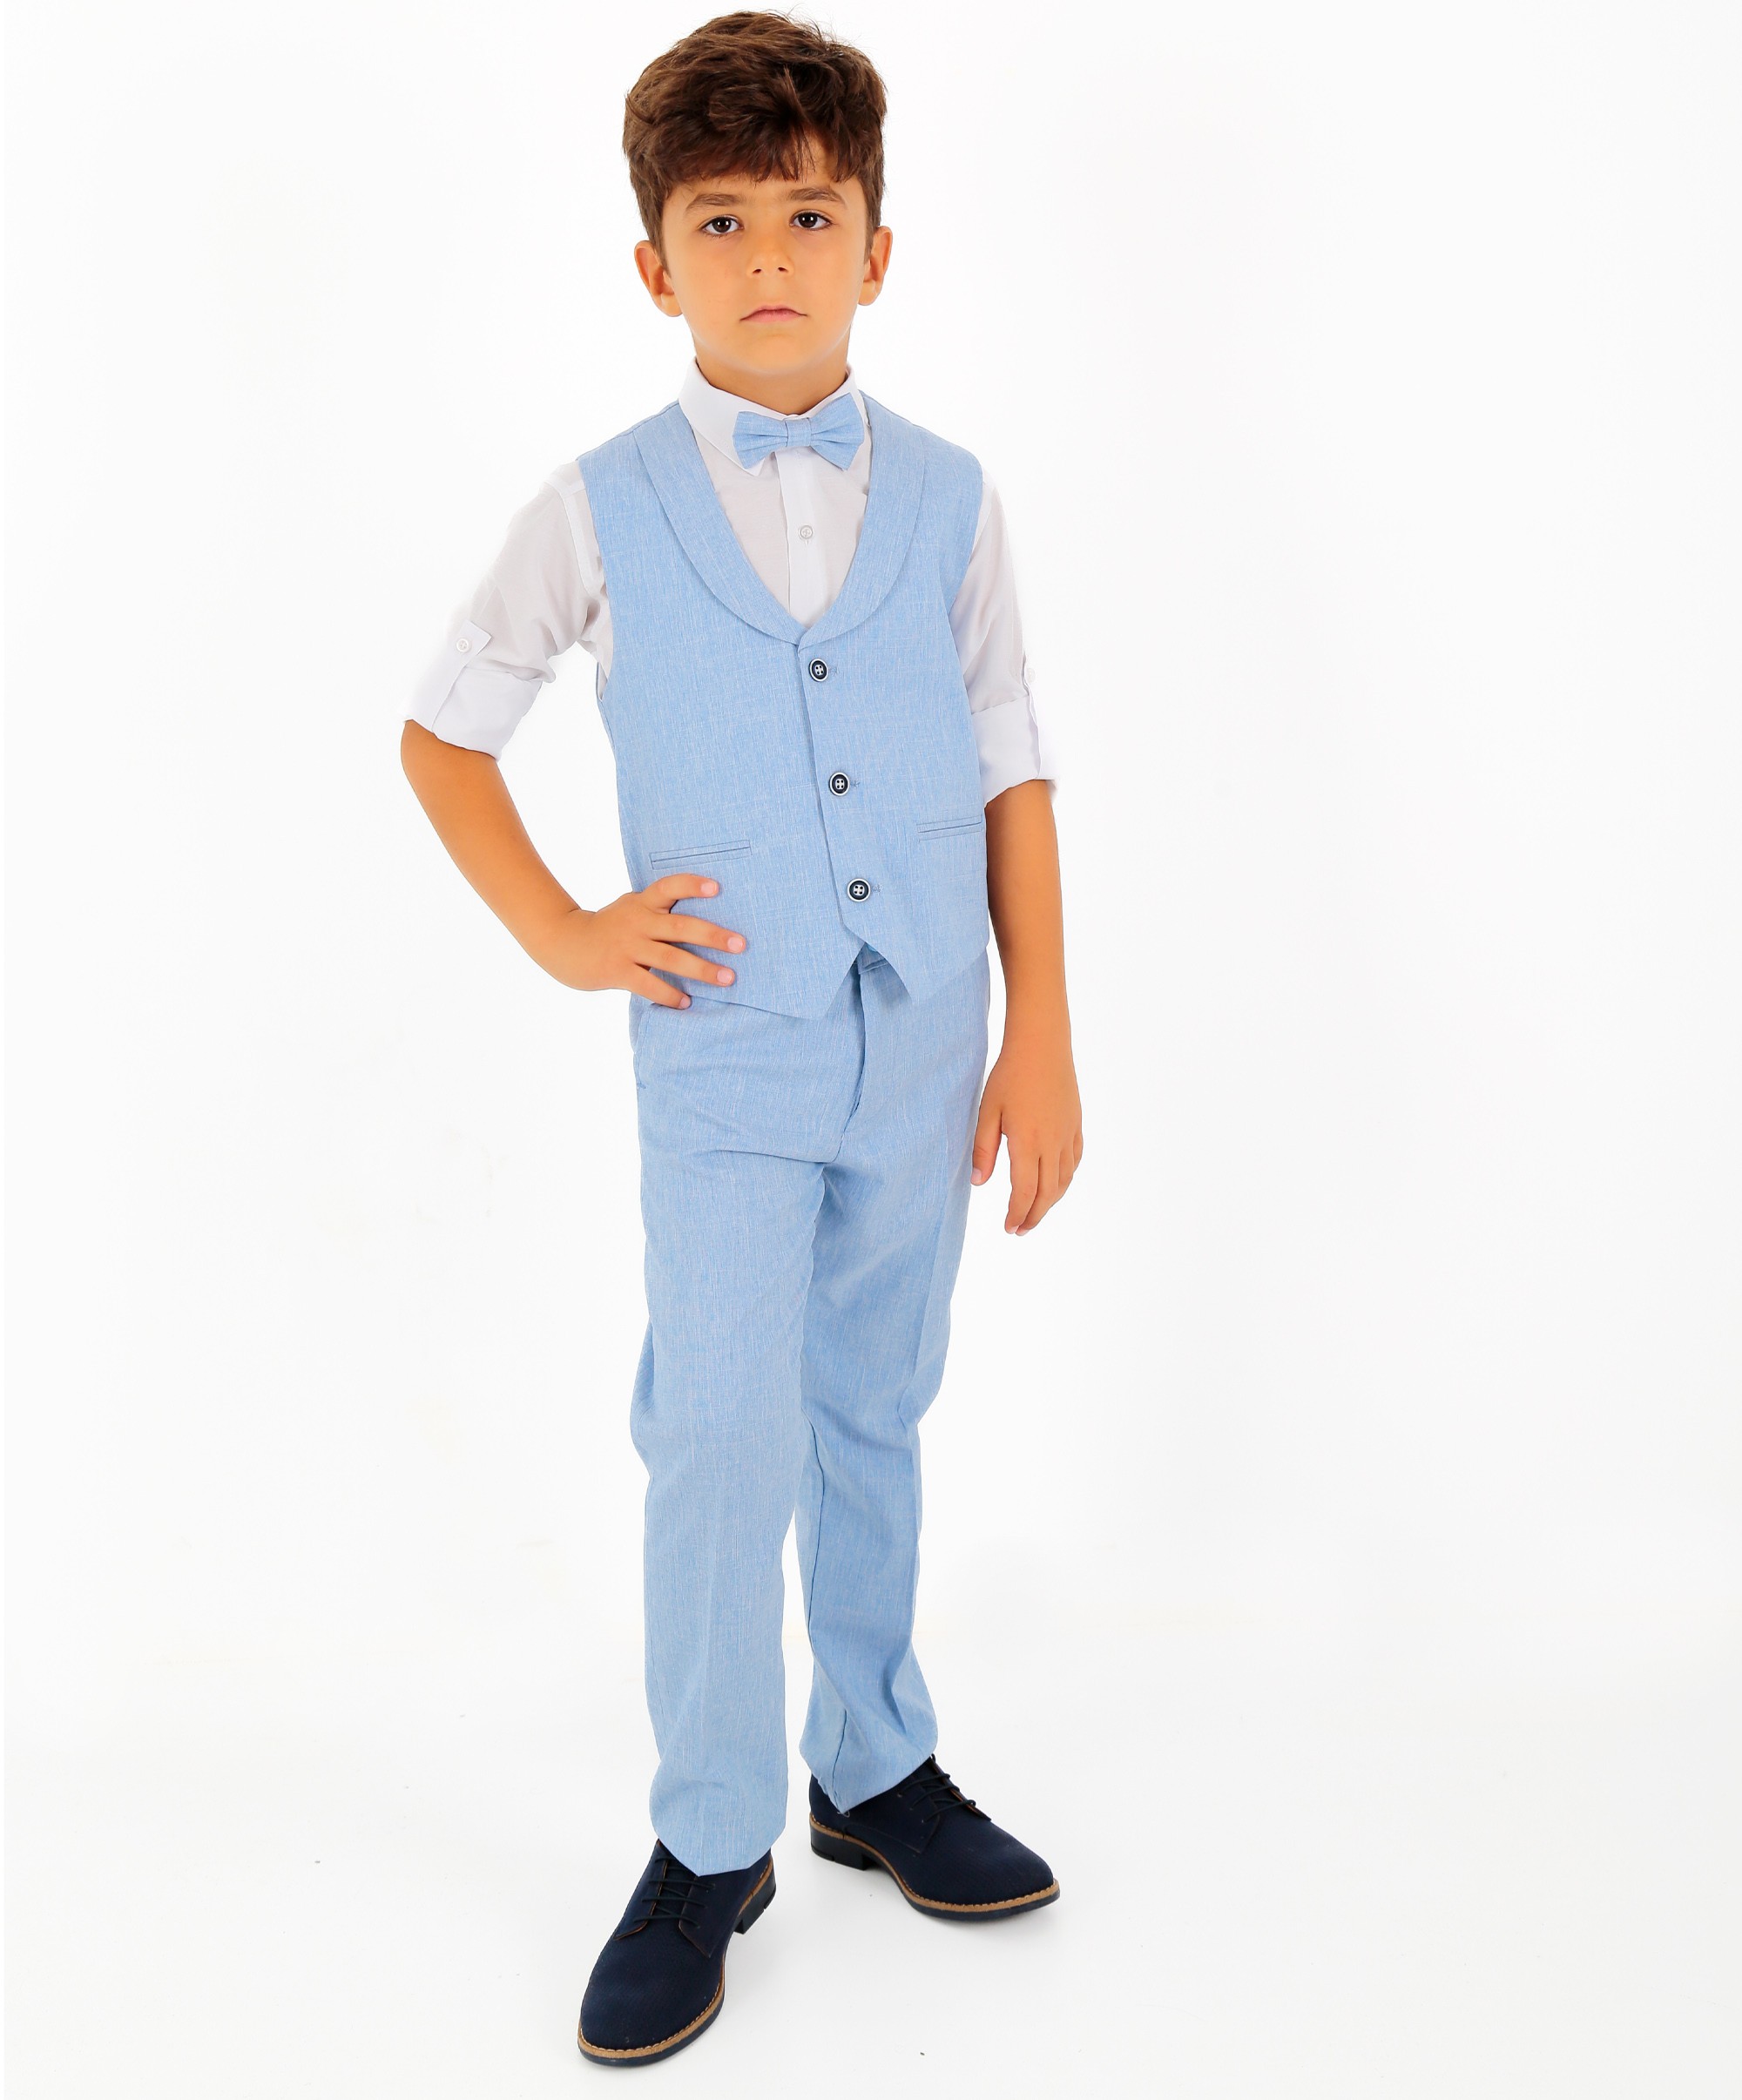 Erkek Çocuk 4 Parça Yelek Takım | Yelek, Pantolon, Gömlek, Papyon - Mavi